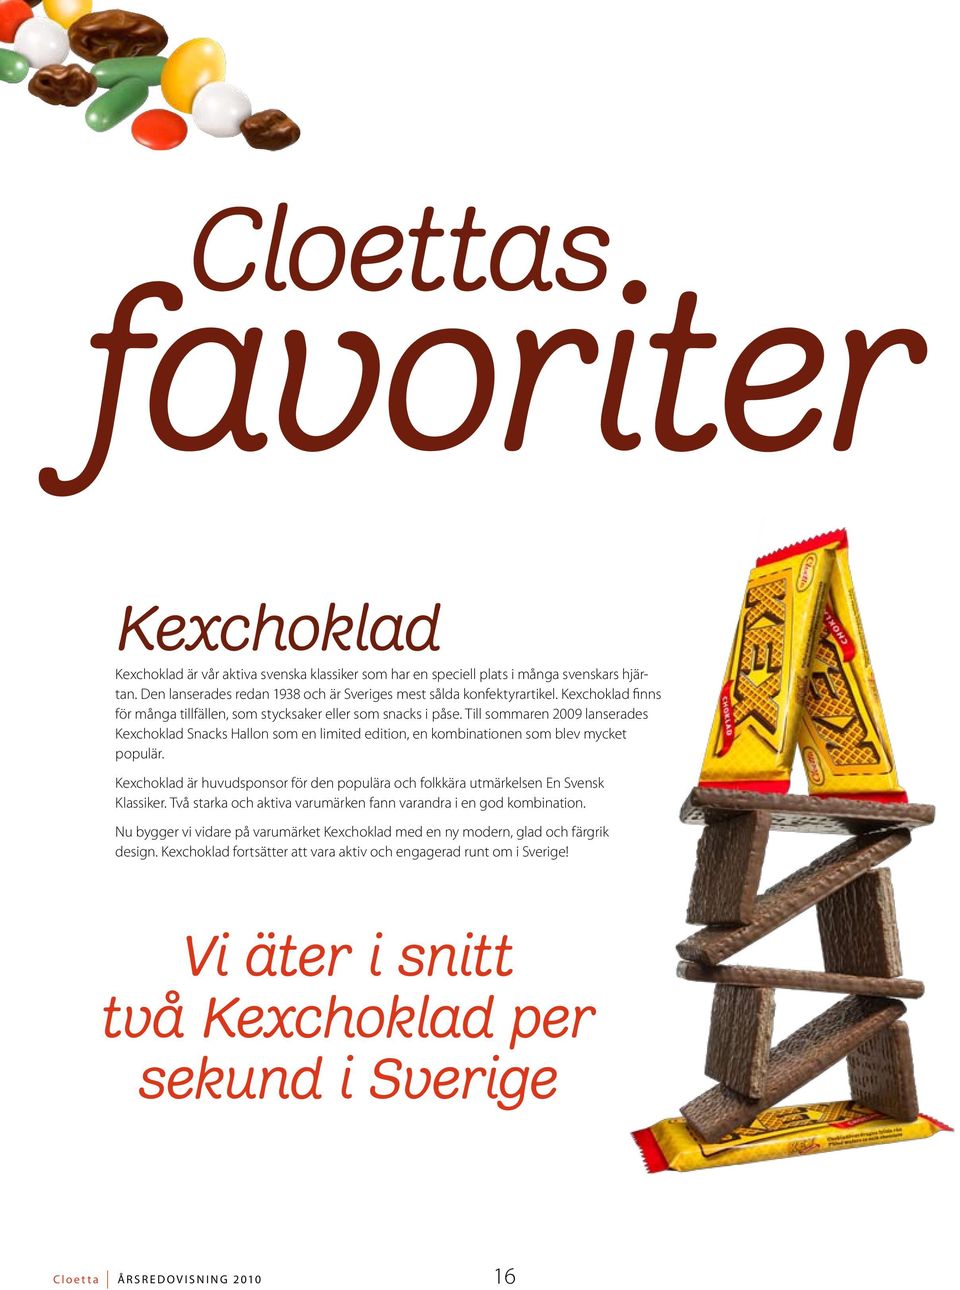 Till sommaren 2009 lanserades Kexchoklad Snacks Hallon som en limited edition, en kombinationen som blev mycket populär.